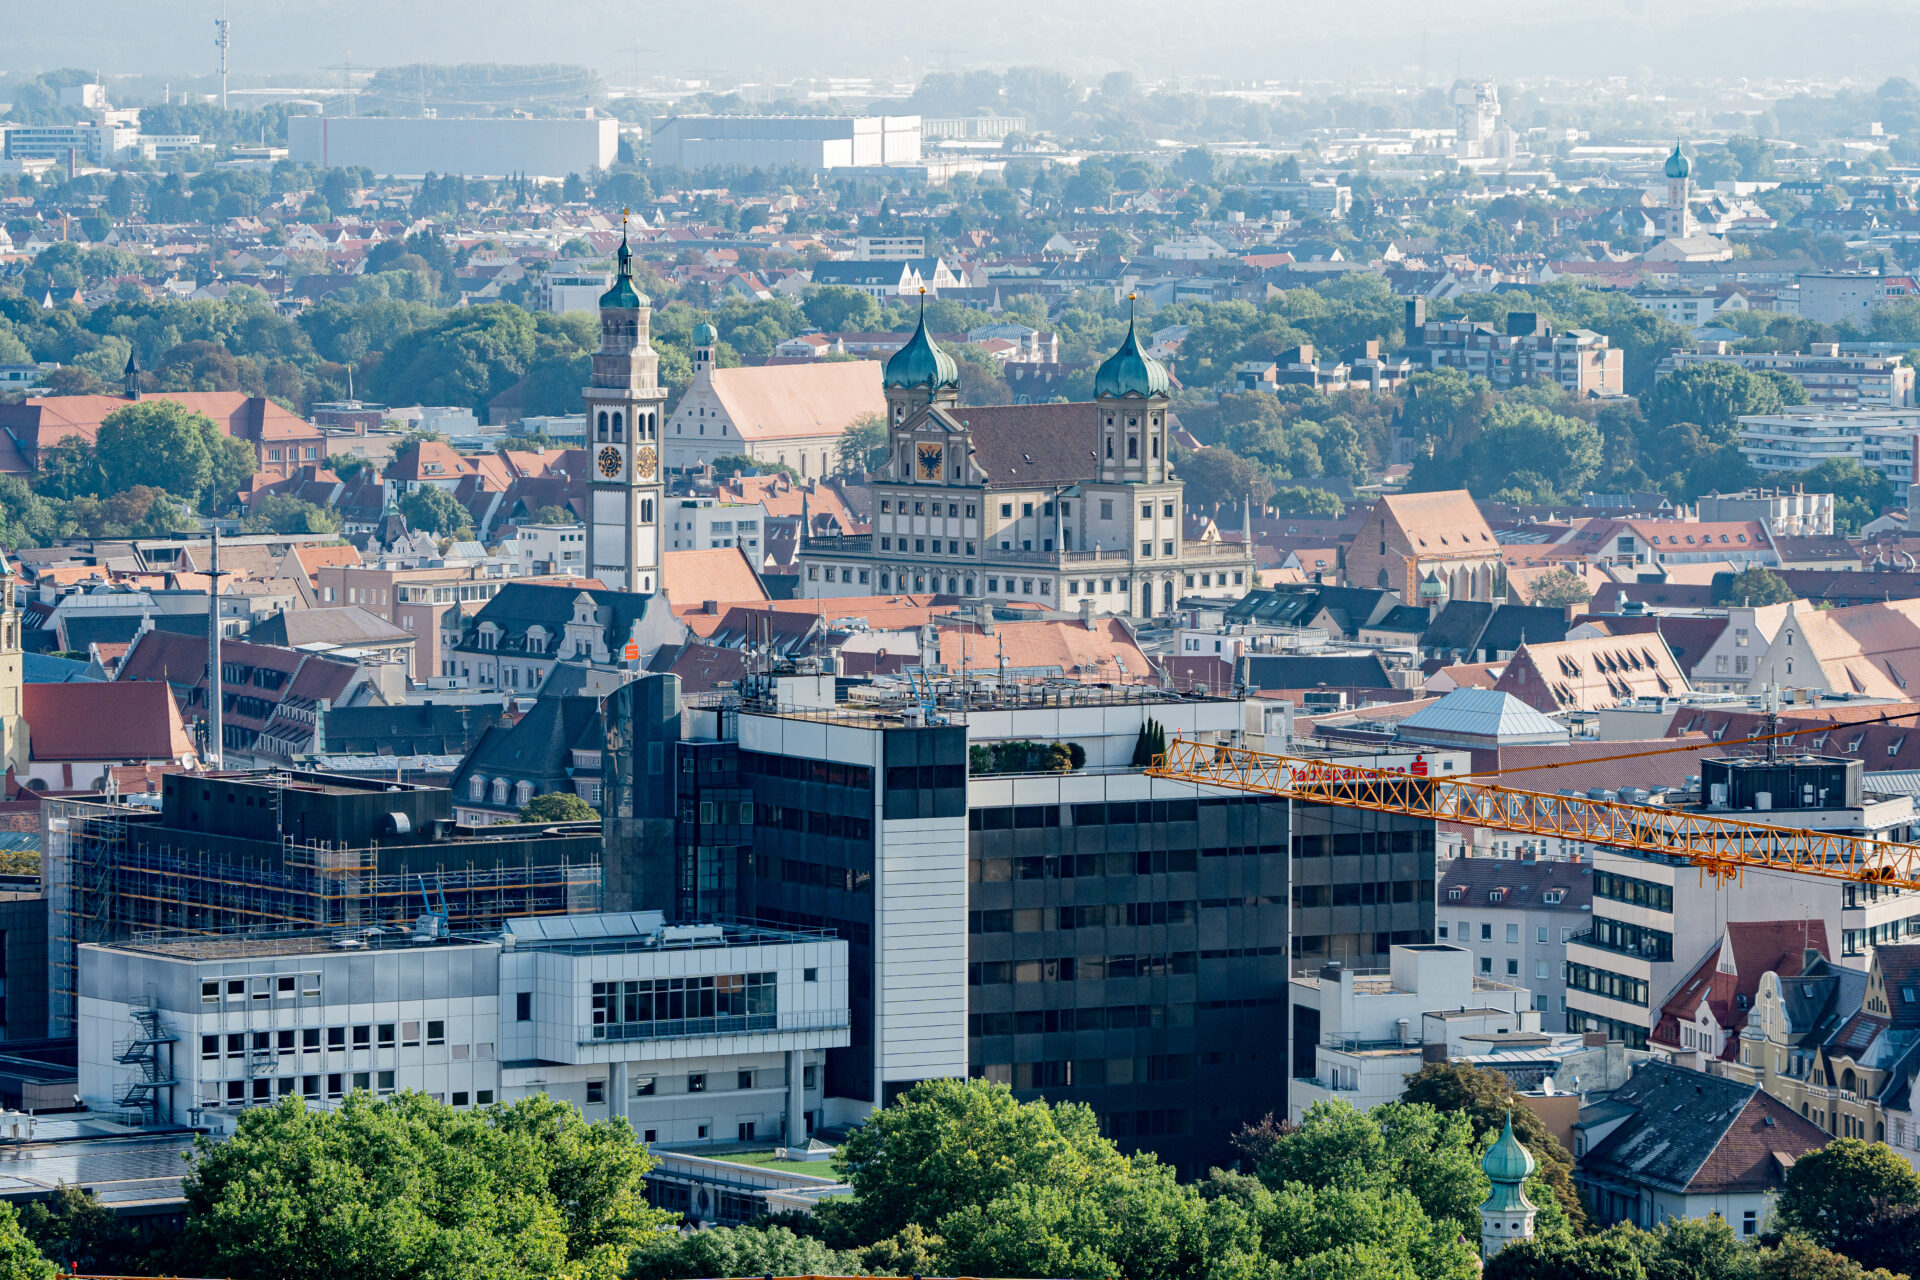 Rundblick über A³ vom Hotelturm Augsburg